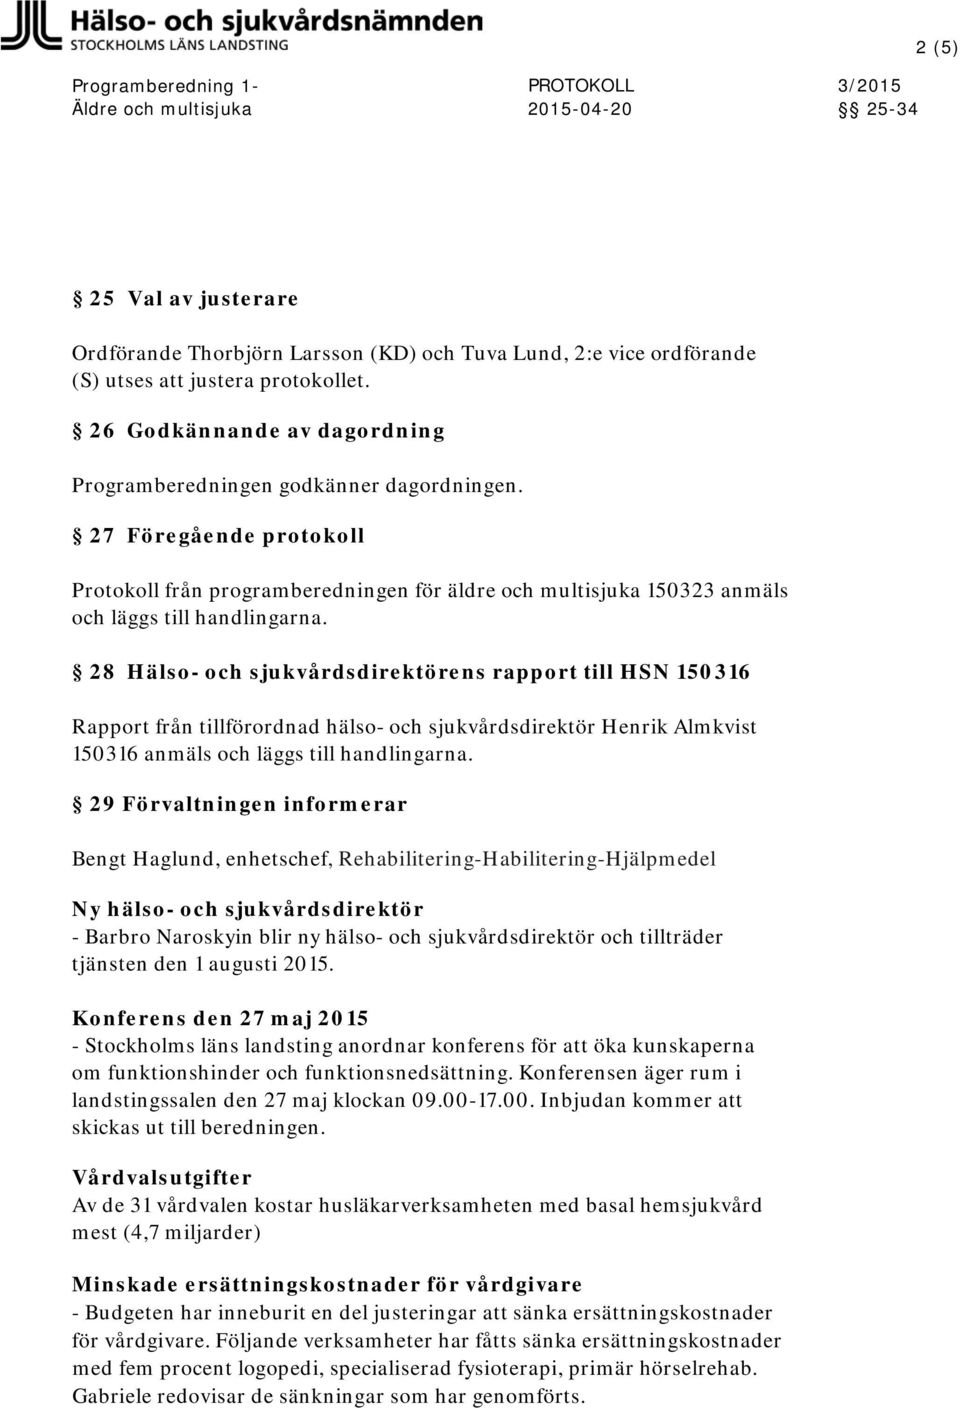 28 Hälso- och sjukvårdsdirektörens rapport till HSN 150316 Rapport från tillförordnad hälso- och sjukvårdsdirektör Henrik Almkvist 150316 anmäls och läggs till handlingarna.